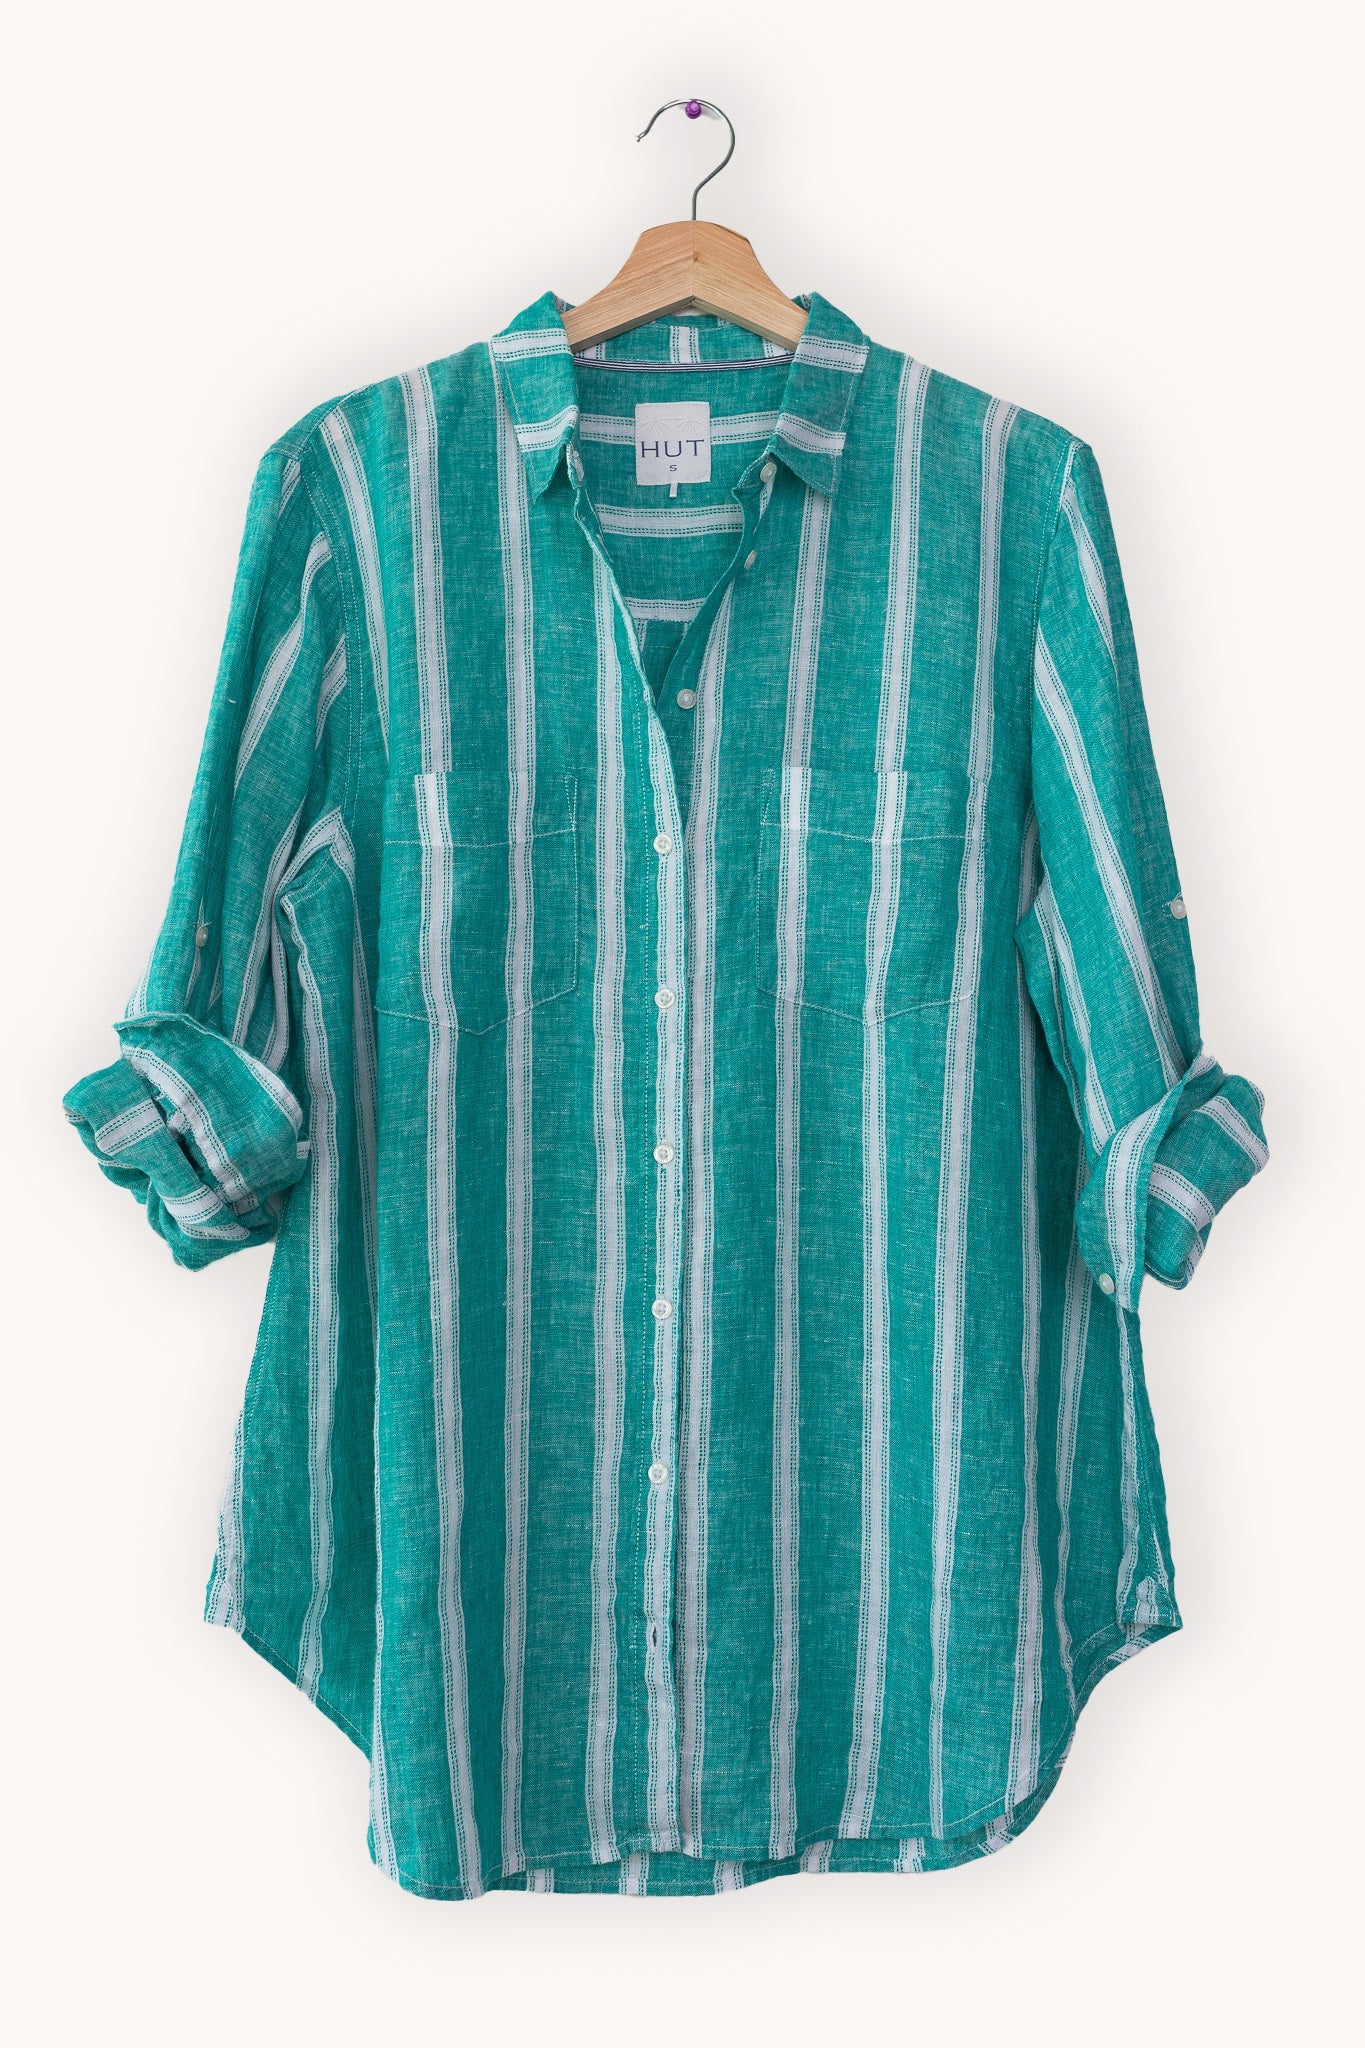 Hut Boyfriend Shirt - Jade Ticking Stripe